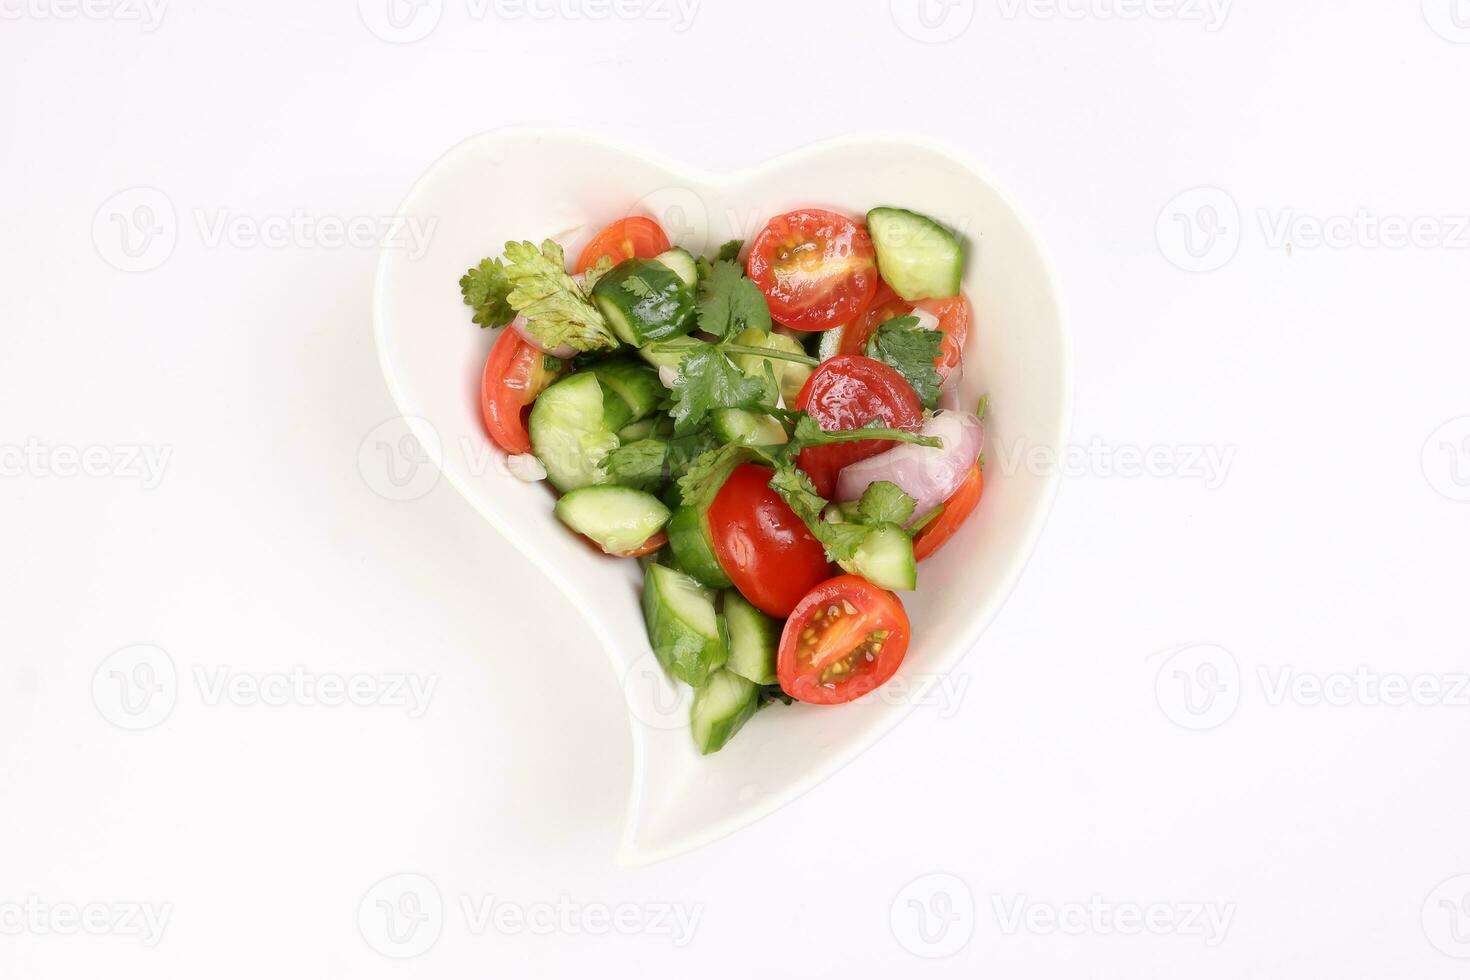 indio subcontinente estilo tomate Pepino cebolla chile cilantro ensalada en ciervo forma blanco plato en blanco antecedentes foto